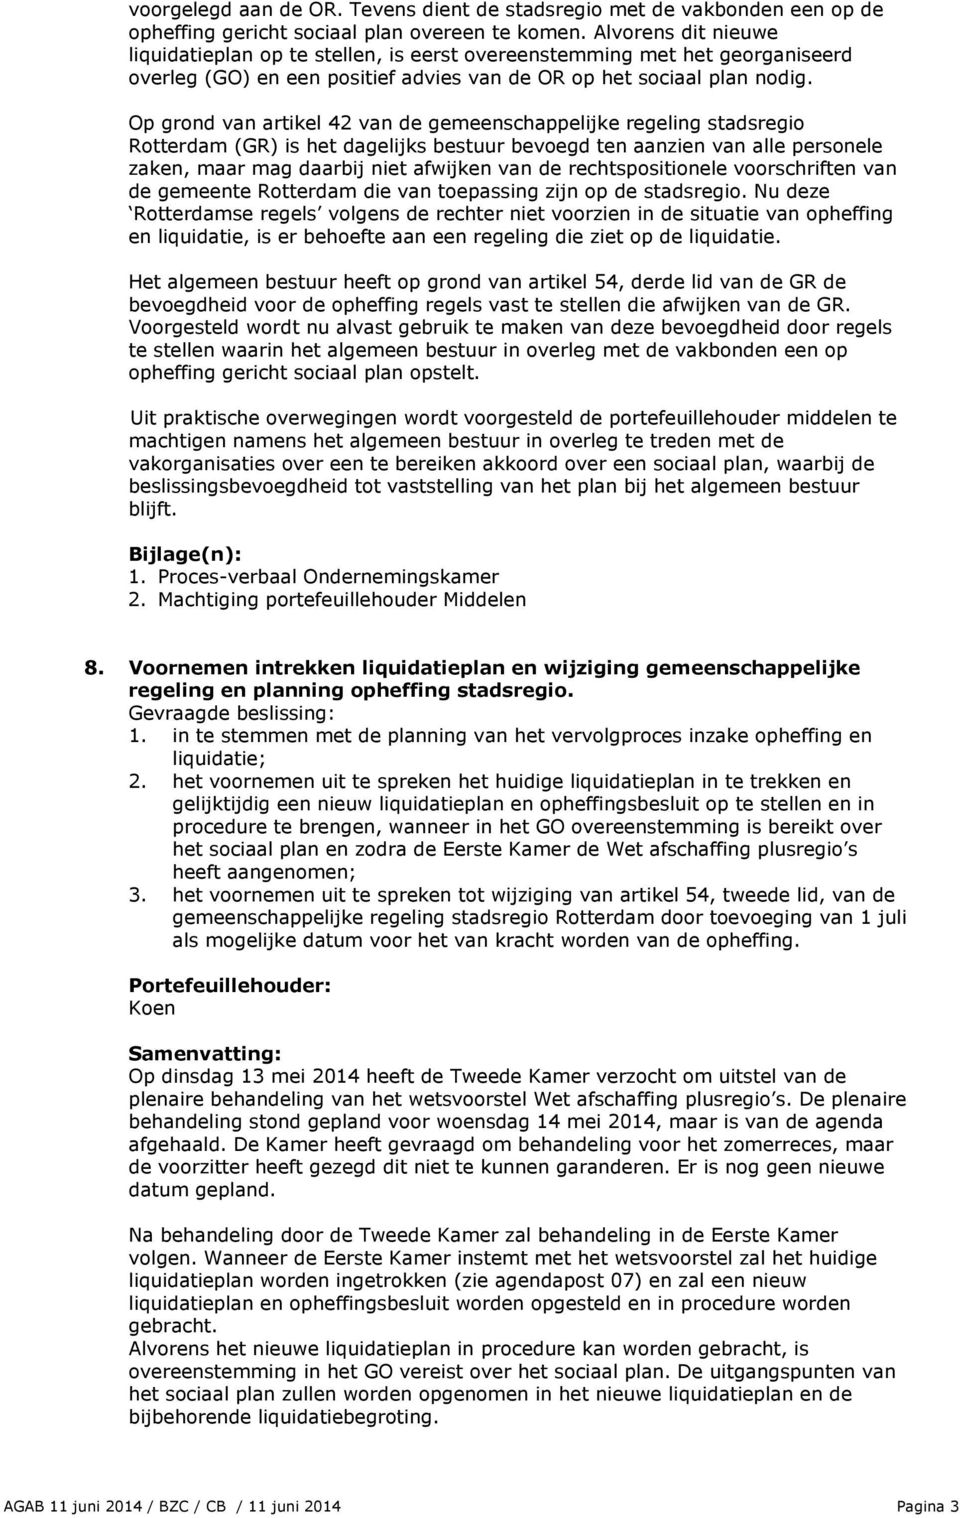 Op grond van artikel 42 van de gemeenschappelijke regeling stadsregio Rotterdam (GR) is het dagelijks bestuur bevoegd ten aanzien van alle personele zaken, maar mag daarbij niet afwijken van de